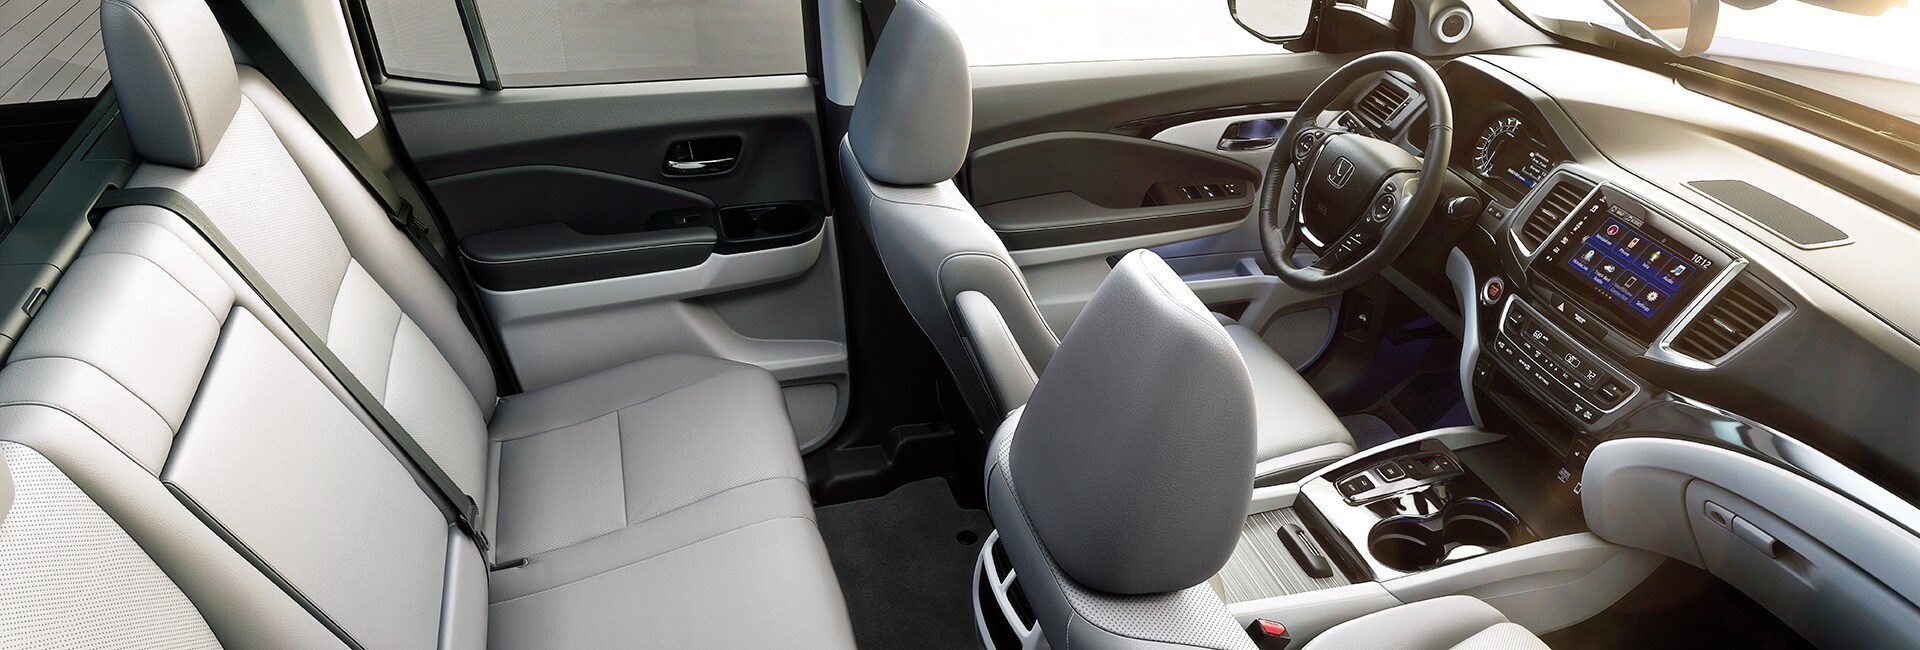 2020 Honda Ridgeline Interior Features